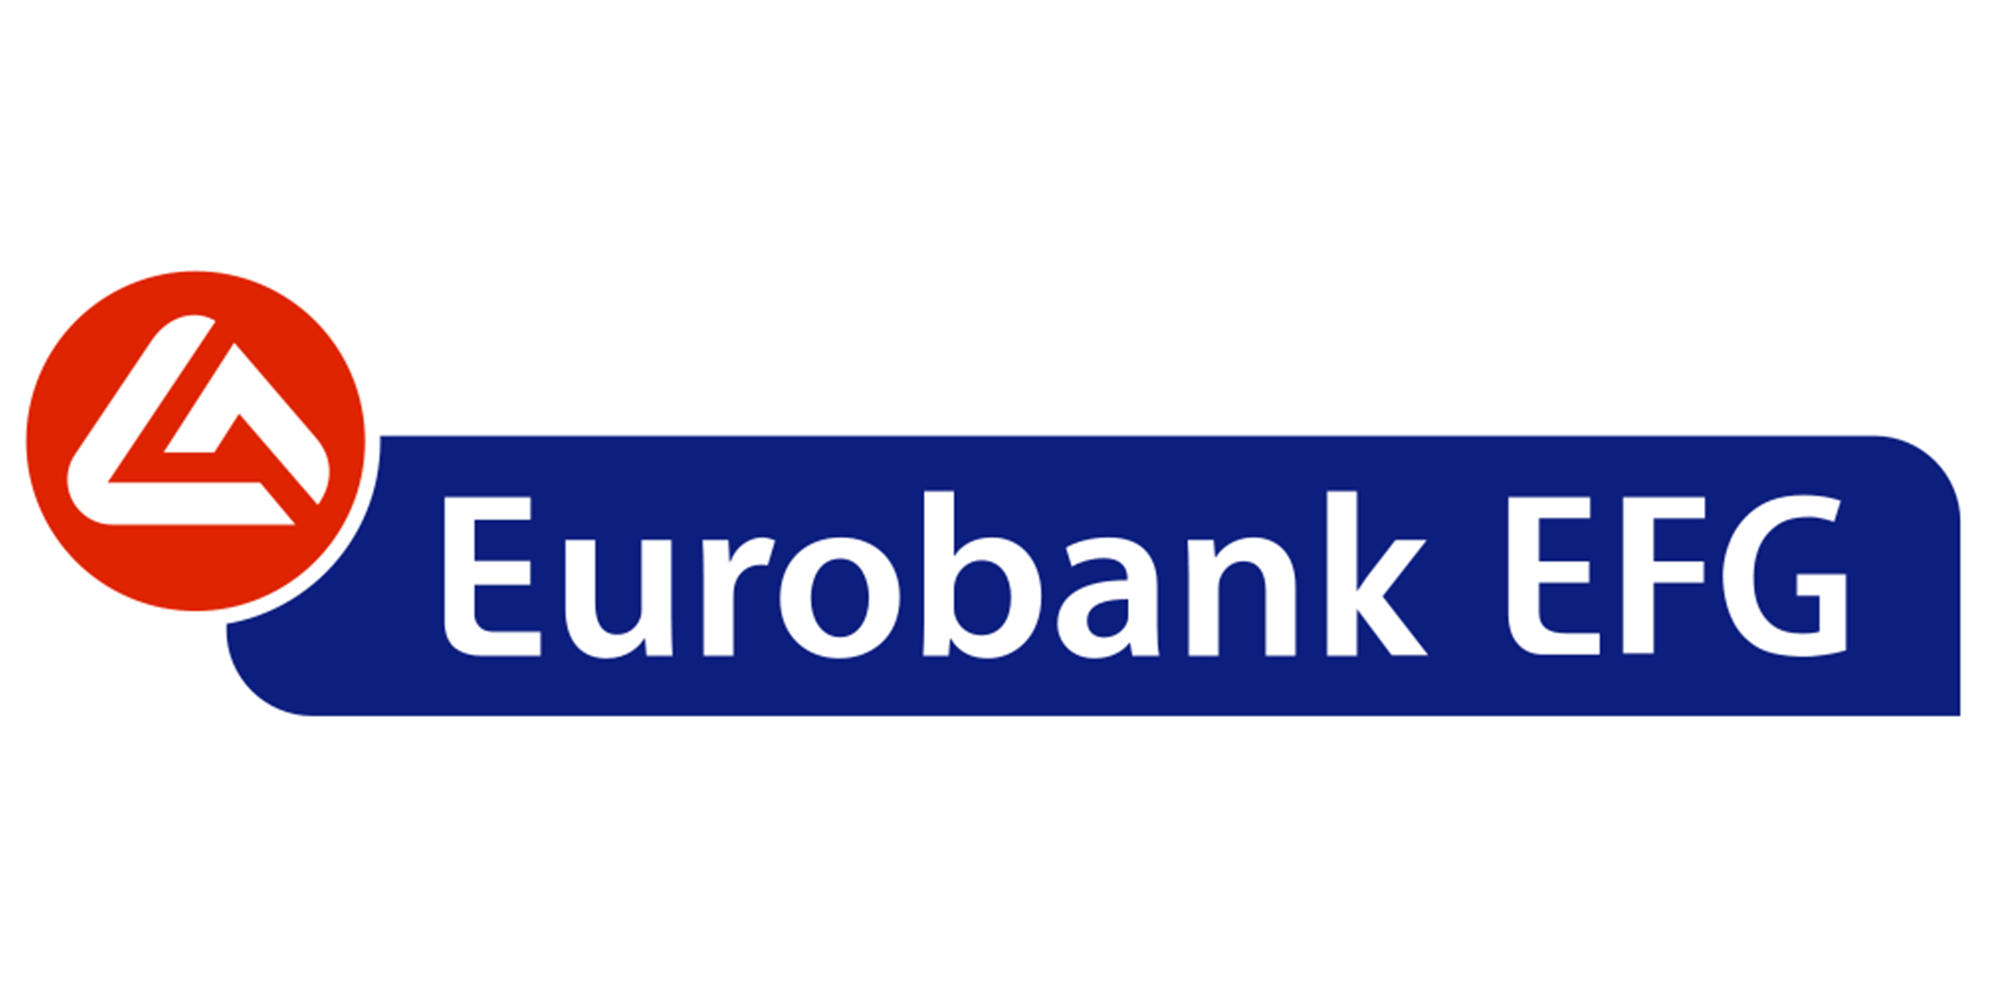  Eurobank